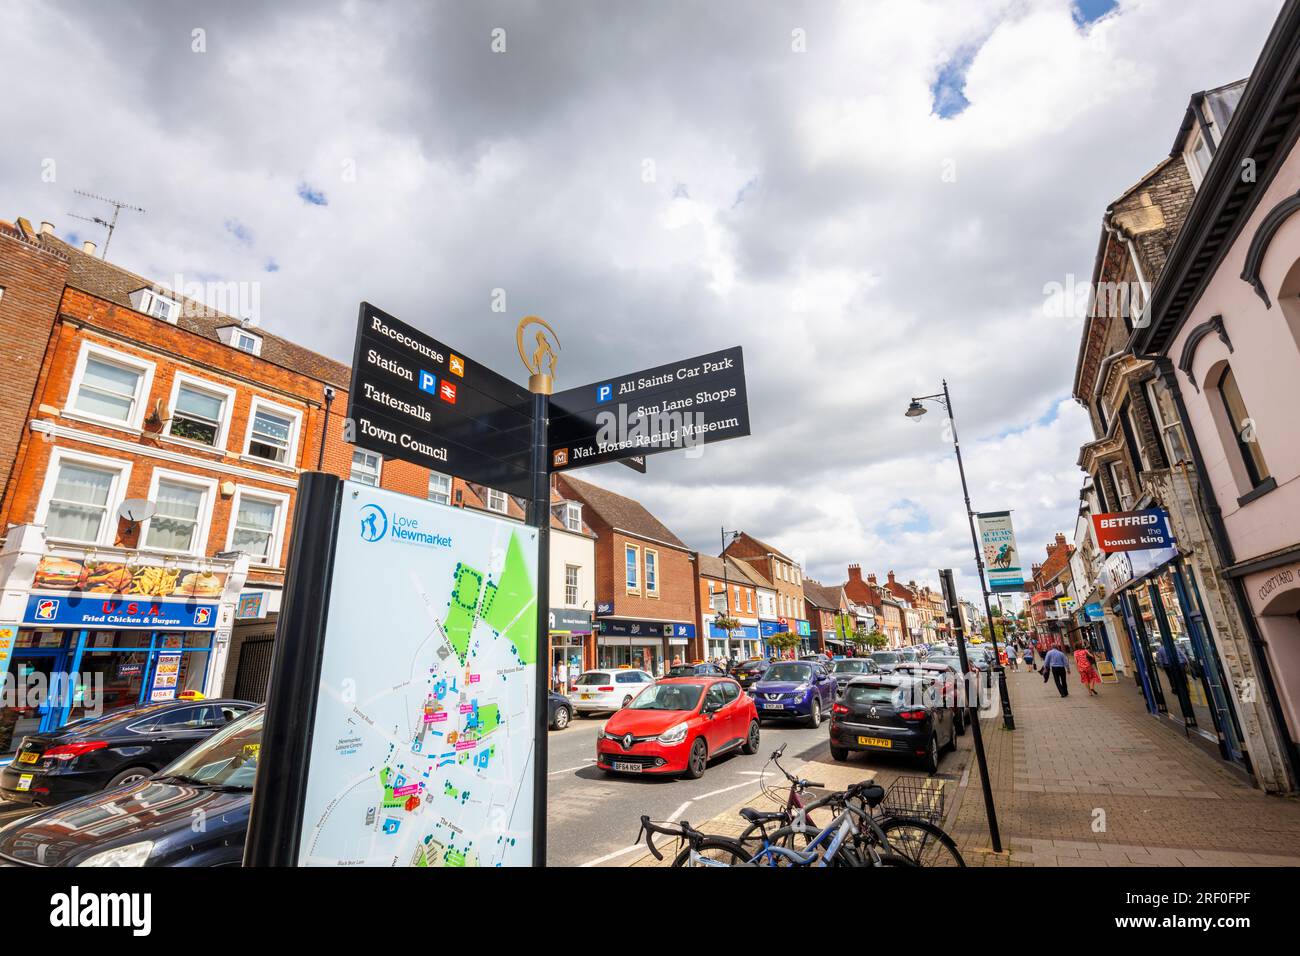 Panneau de rue pointant vers des points d'intérêt locaux dans le centre-ville de Newmarket, une ville de marché dans le district de Suffolk Ouest dans le Suffolk, dans l'est de l'Angleterre Banque D'Images